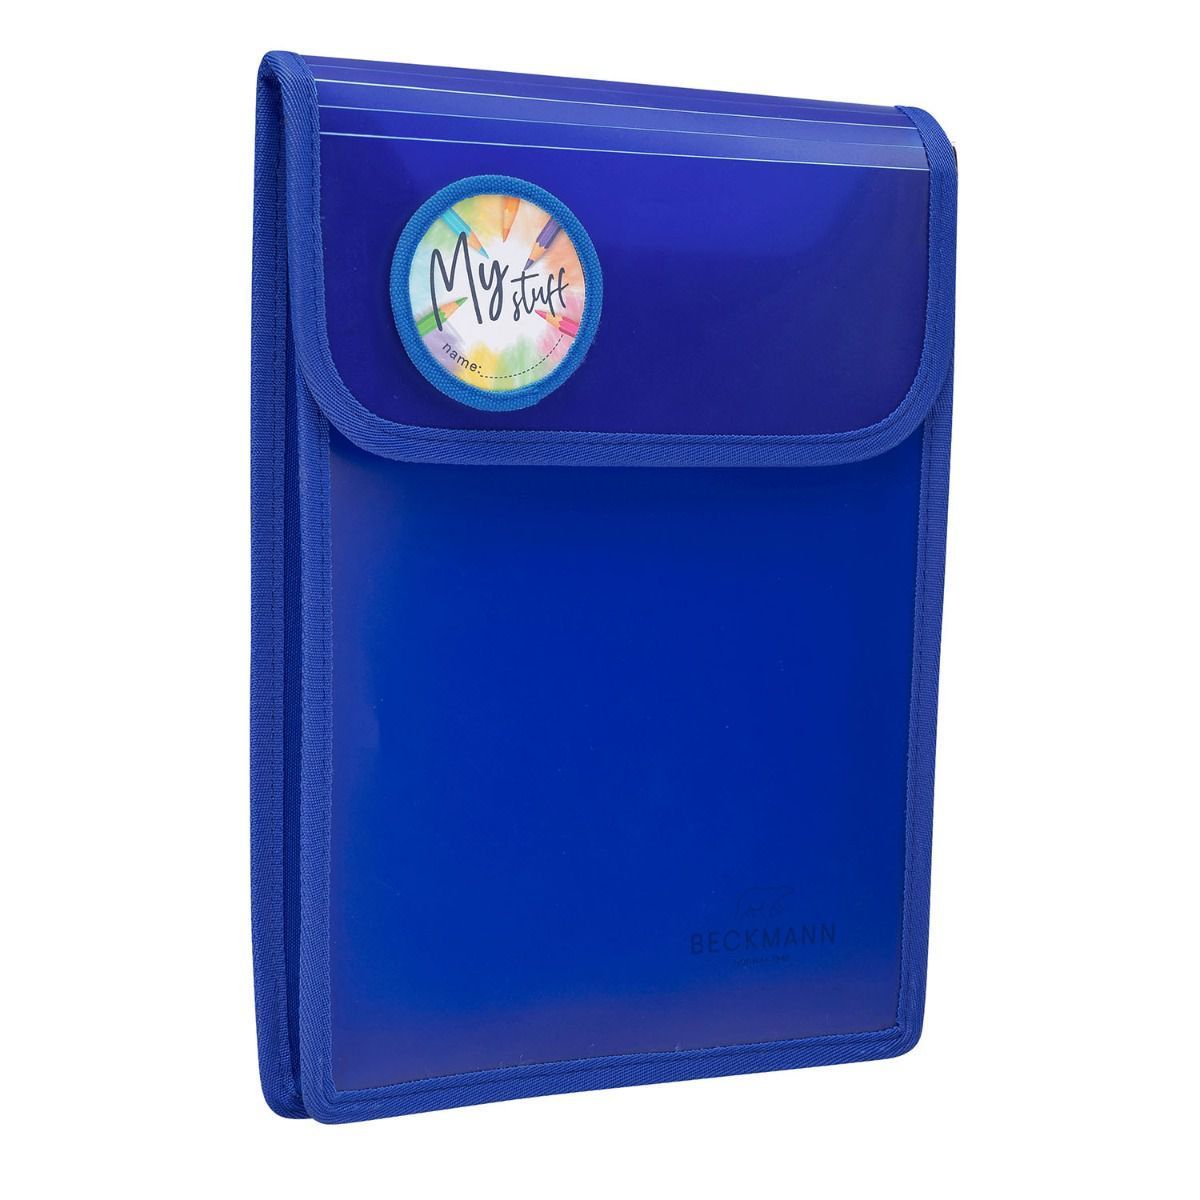 Beckmann A4 Folder Ordner in blau